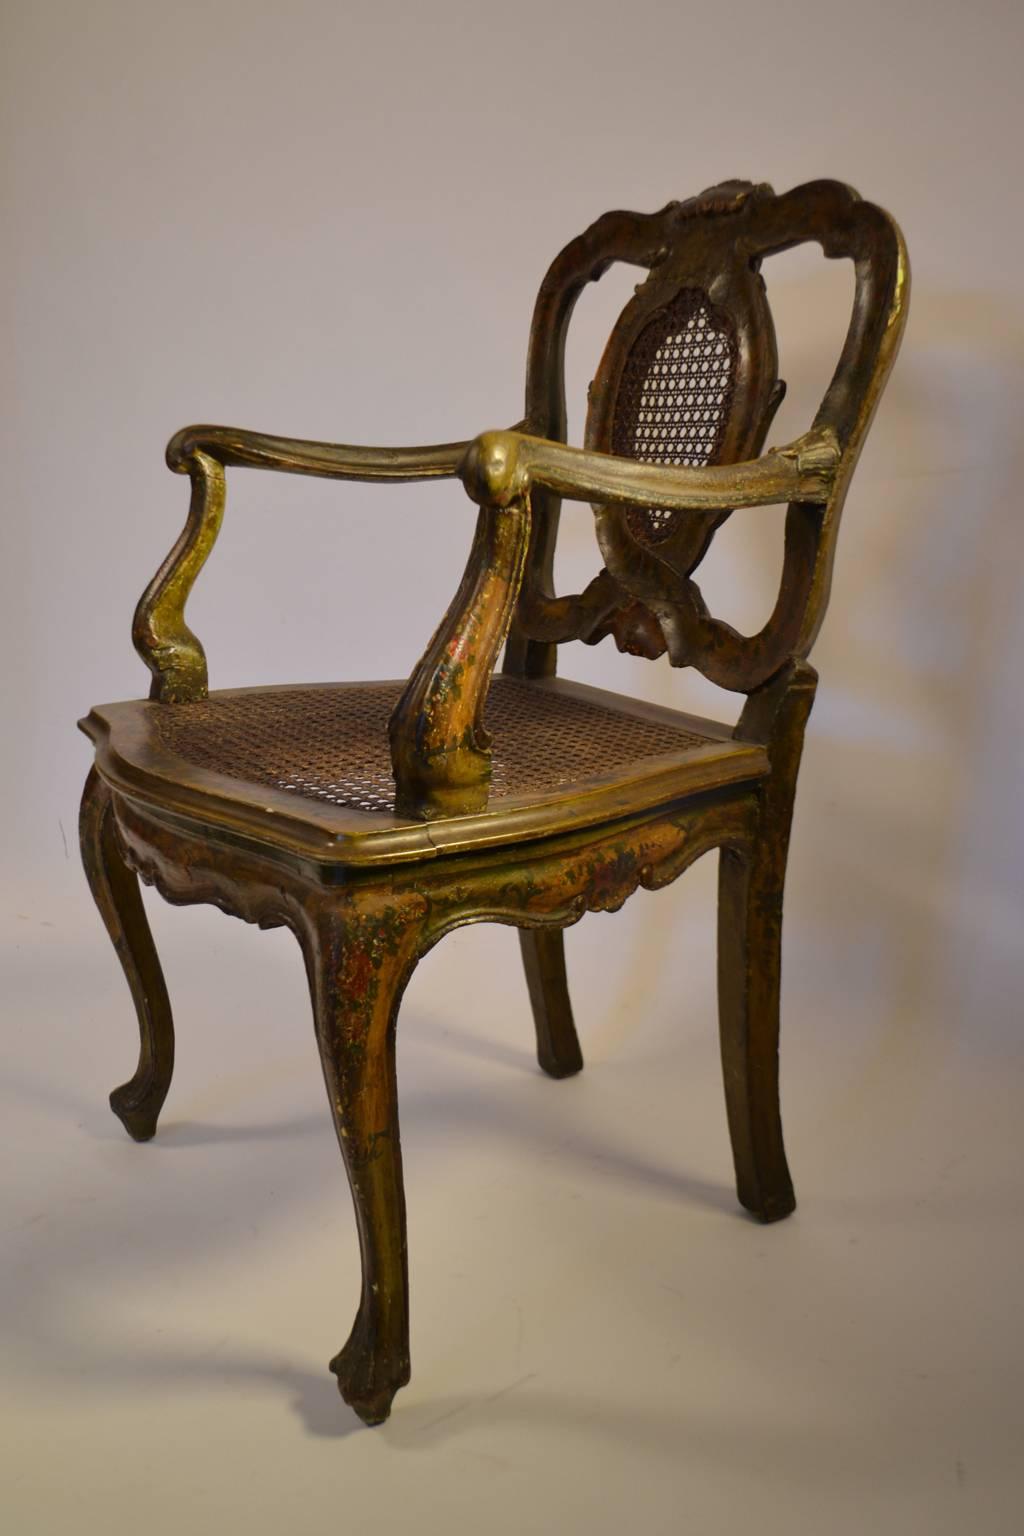 Fauteuil vénitien sculpté et décoré à la peinture polychrome, XVIIIe siècle, rampe de crête moulurée, éclisse cannelée, bras façonnés, assise cannelée, pieds cabriole, pieds façonnés.